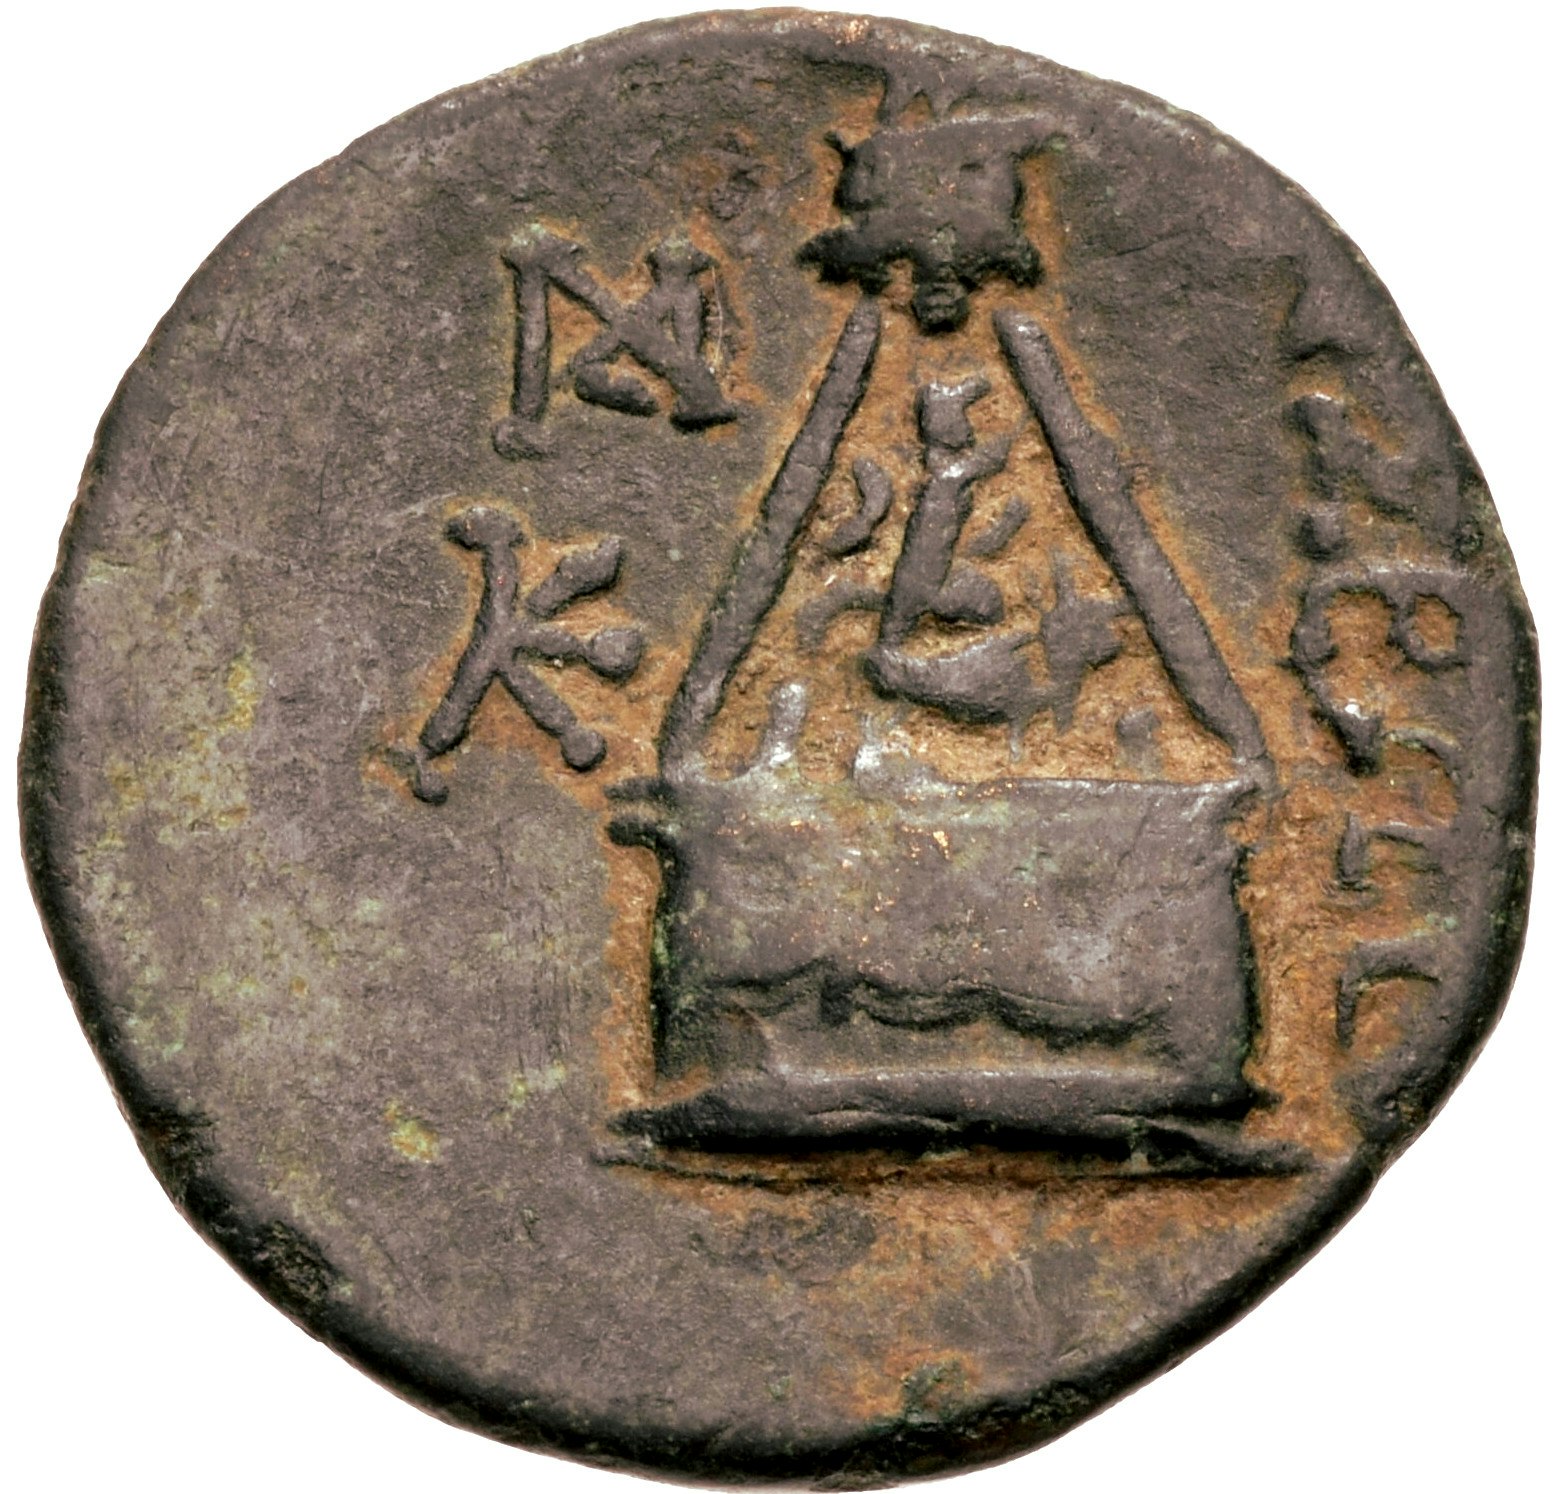 Kilikien, Tarsos, Brons 21mm, präglad efter 164 f.Kr.